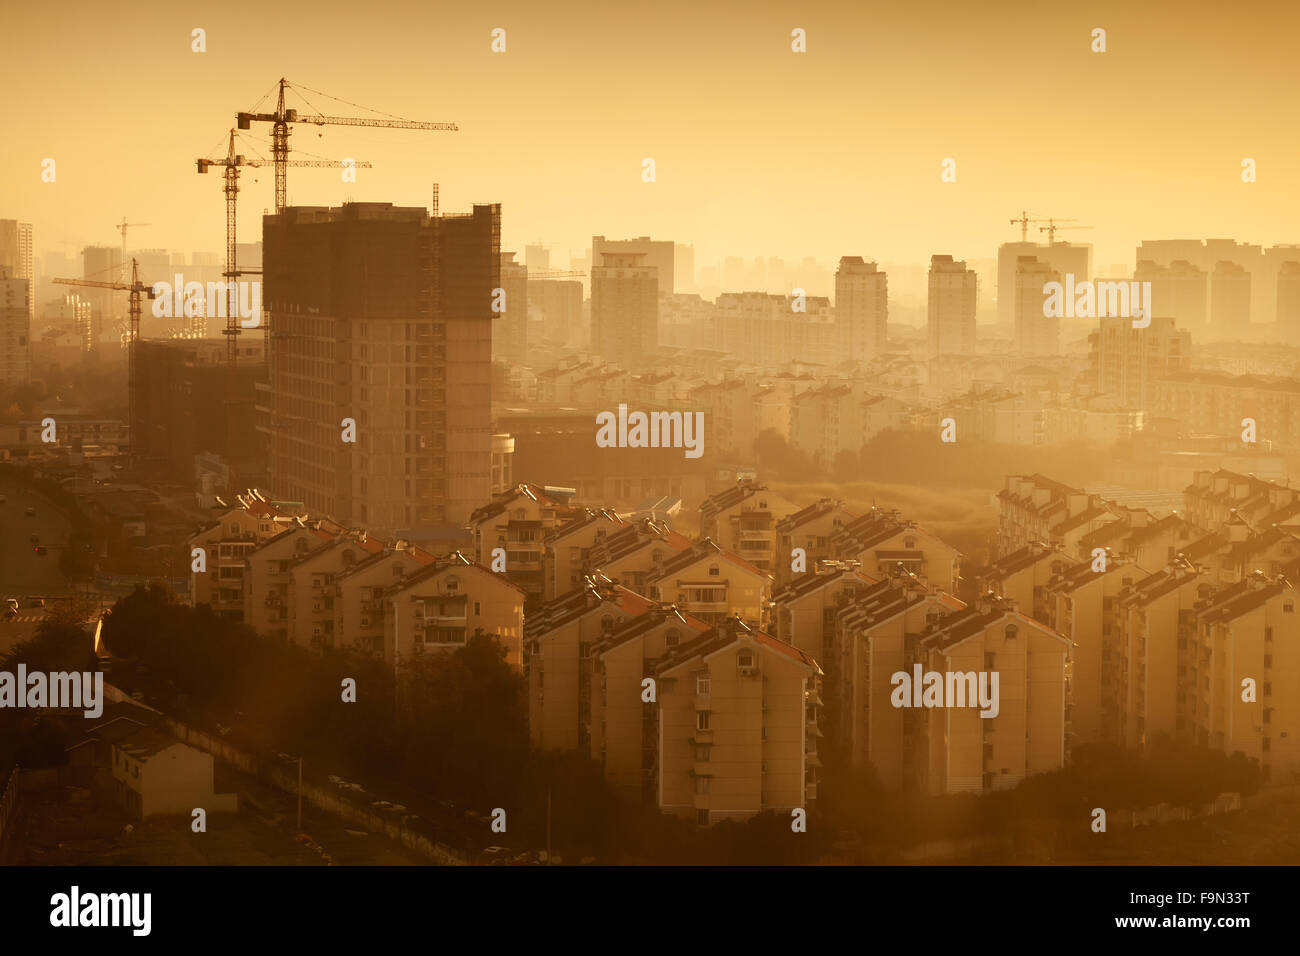 Stadtbild der Stadt Hangzhou, China. Große lebende Häuser im Bau bei Sonnenaufgang. Warmen Tonwertkorrektur Filter Foto ef Stockfoto